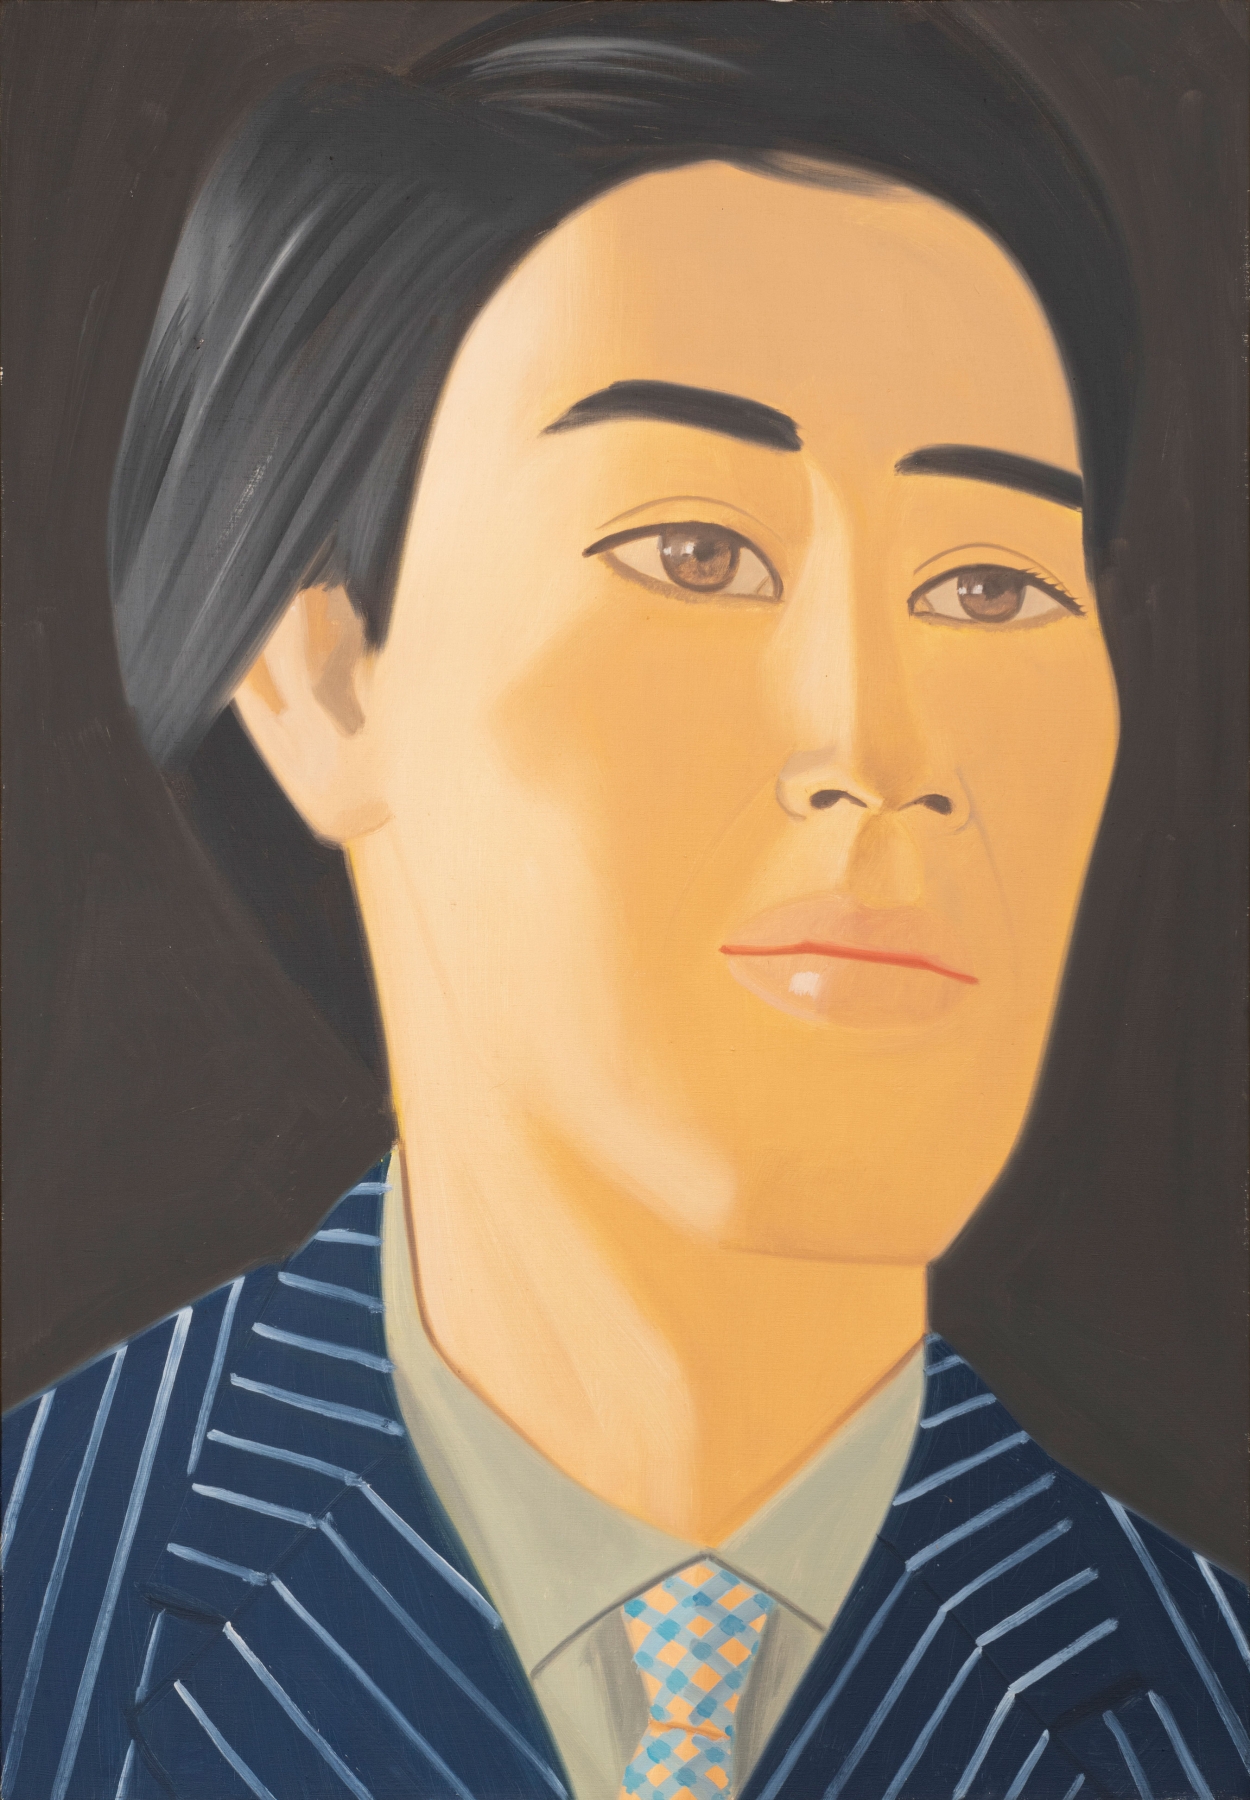 Hiroshi, 1979